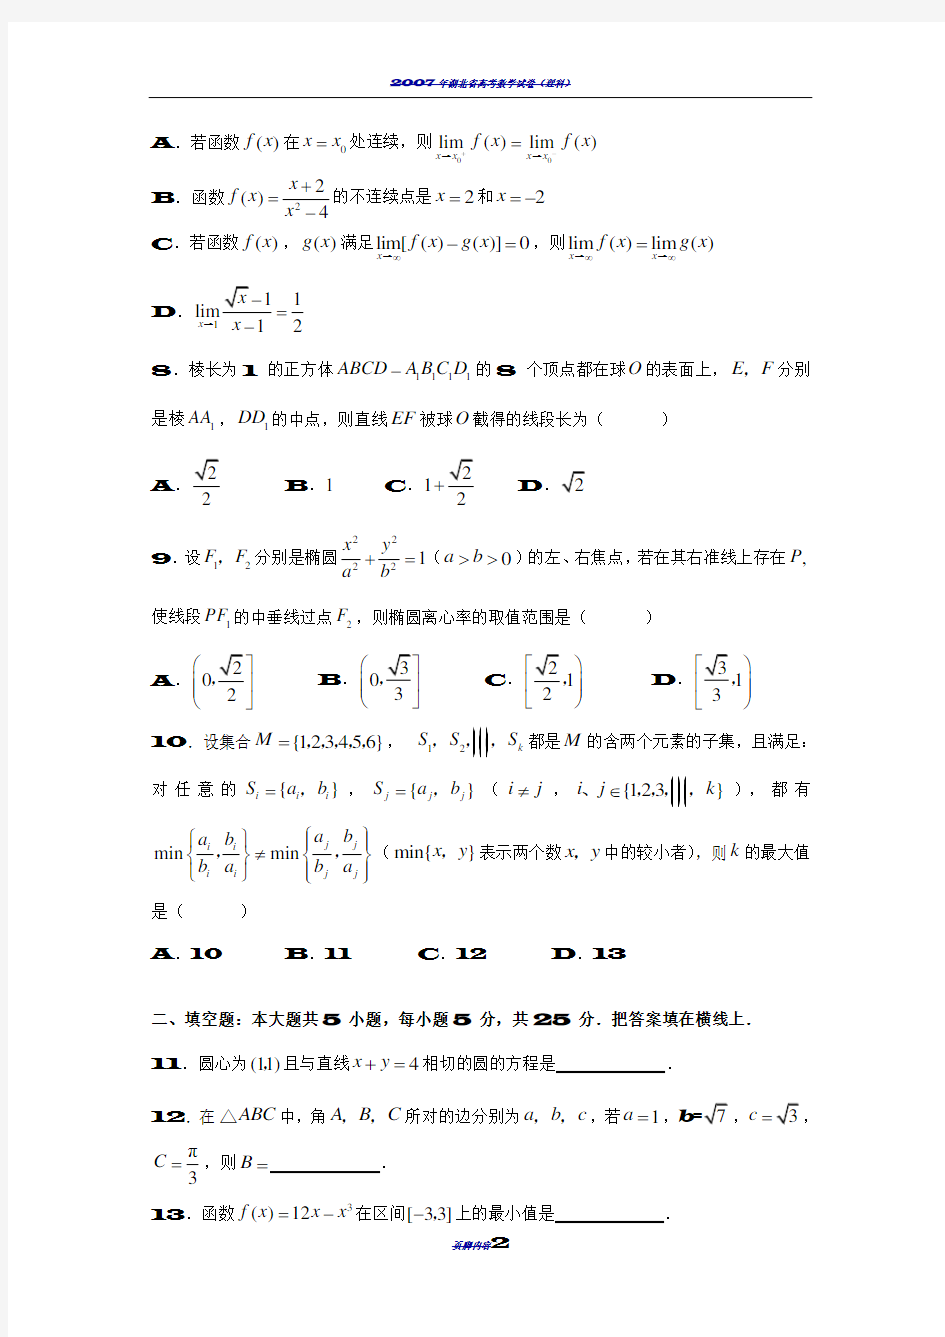 2007年湖南高考理科数学试卷及详解